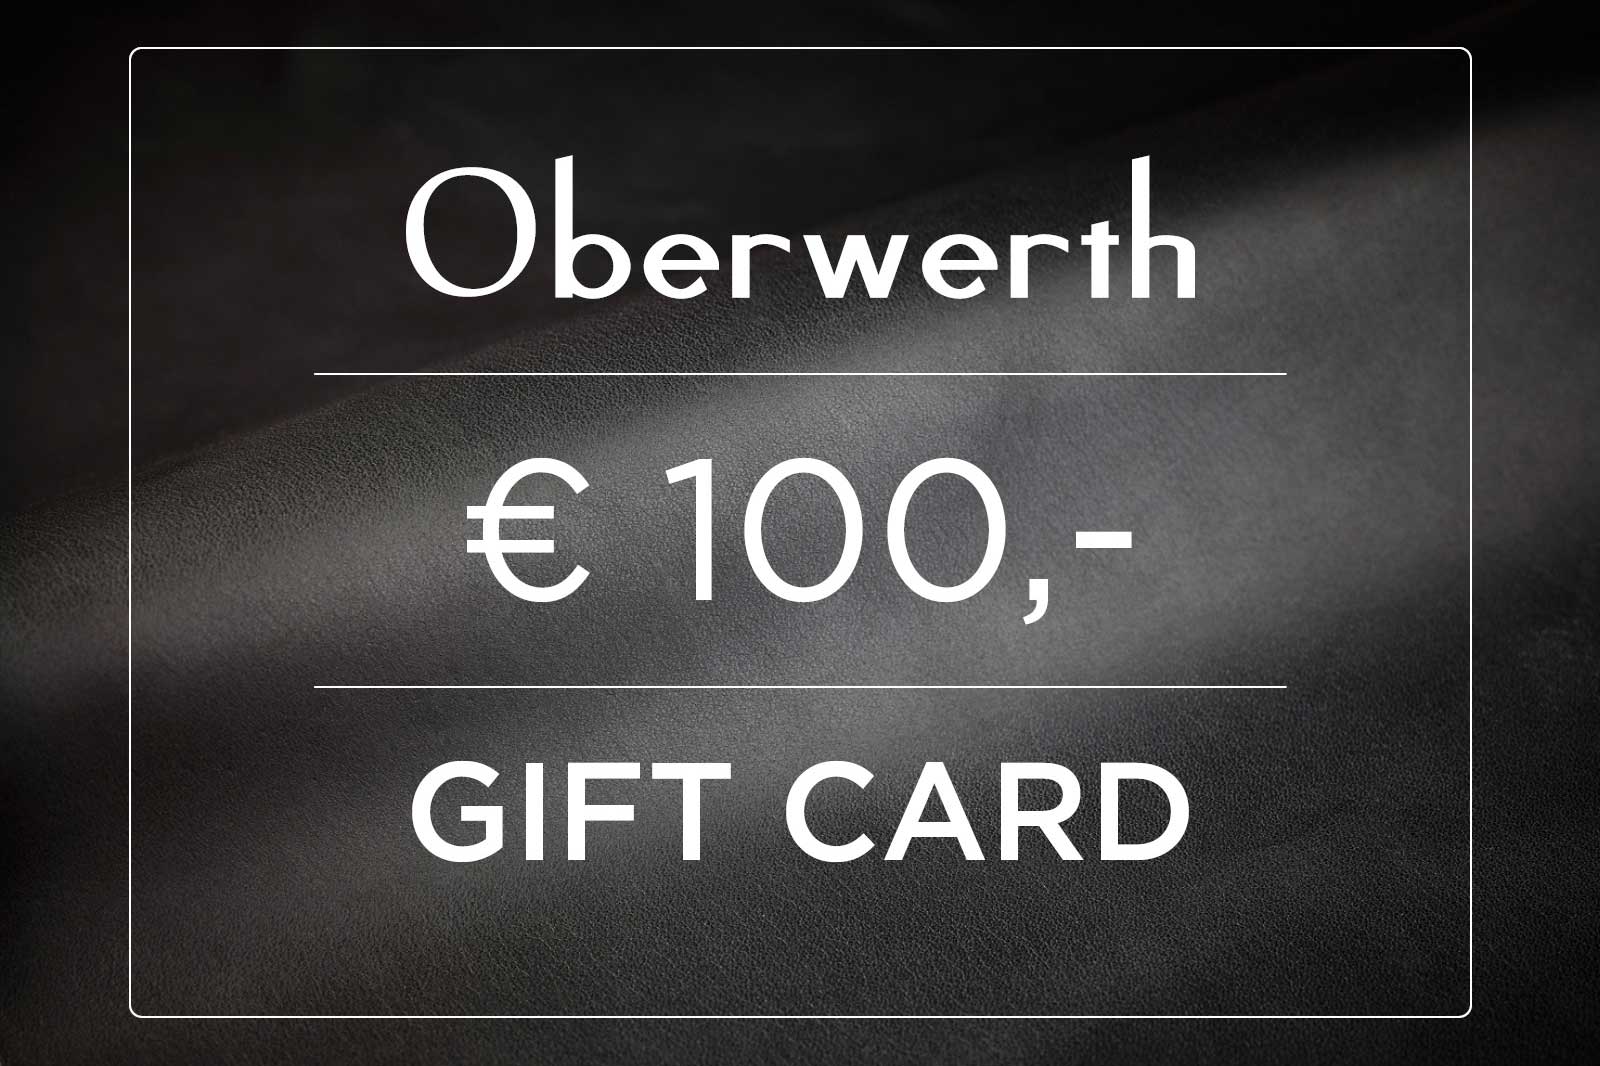 Oberwerth Gutschein 50€ - 2000€